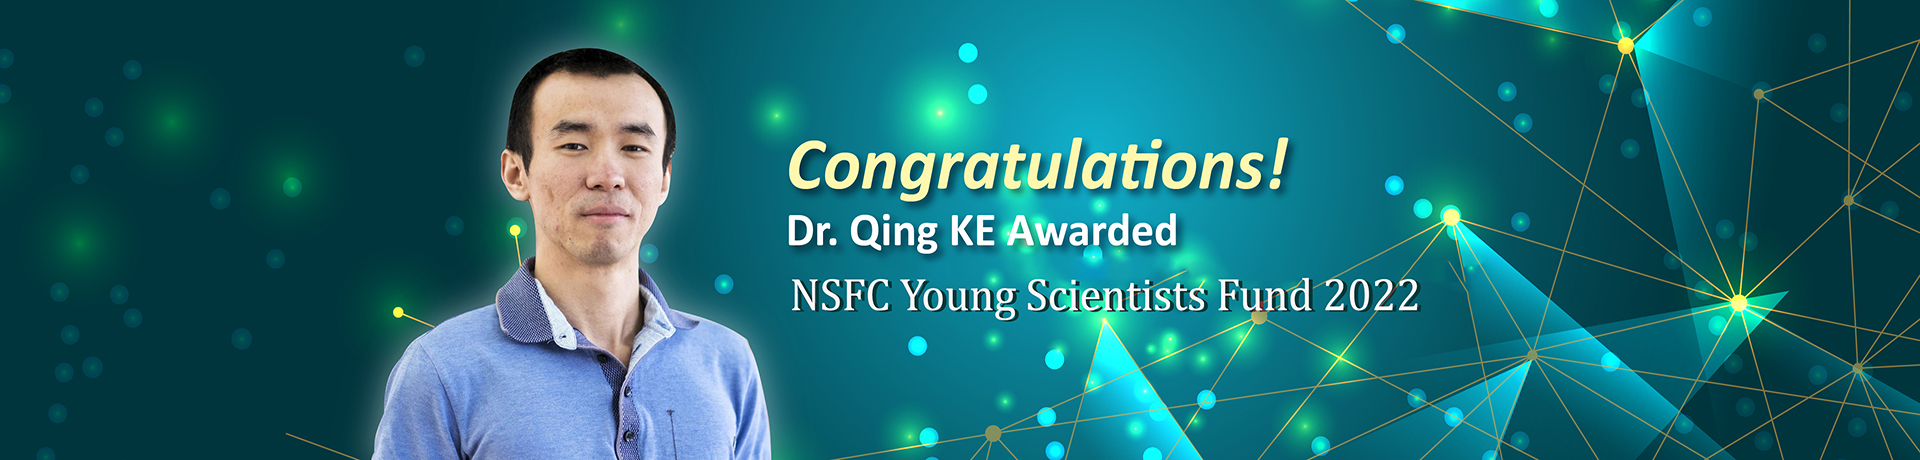 Dr. Qing KE Awarded Banner